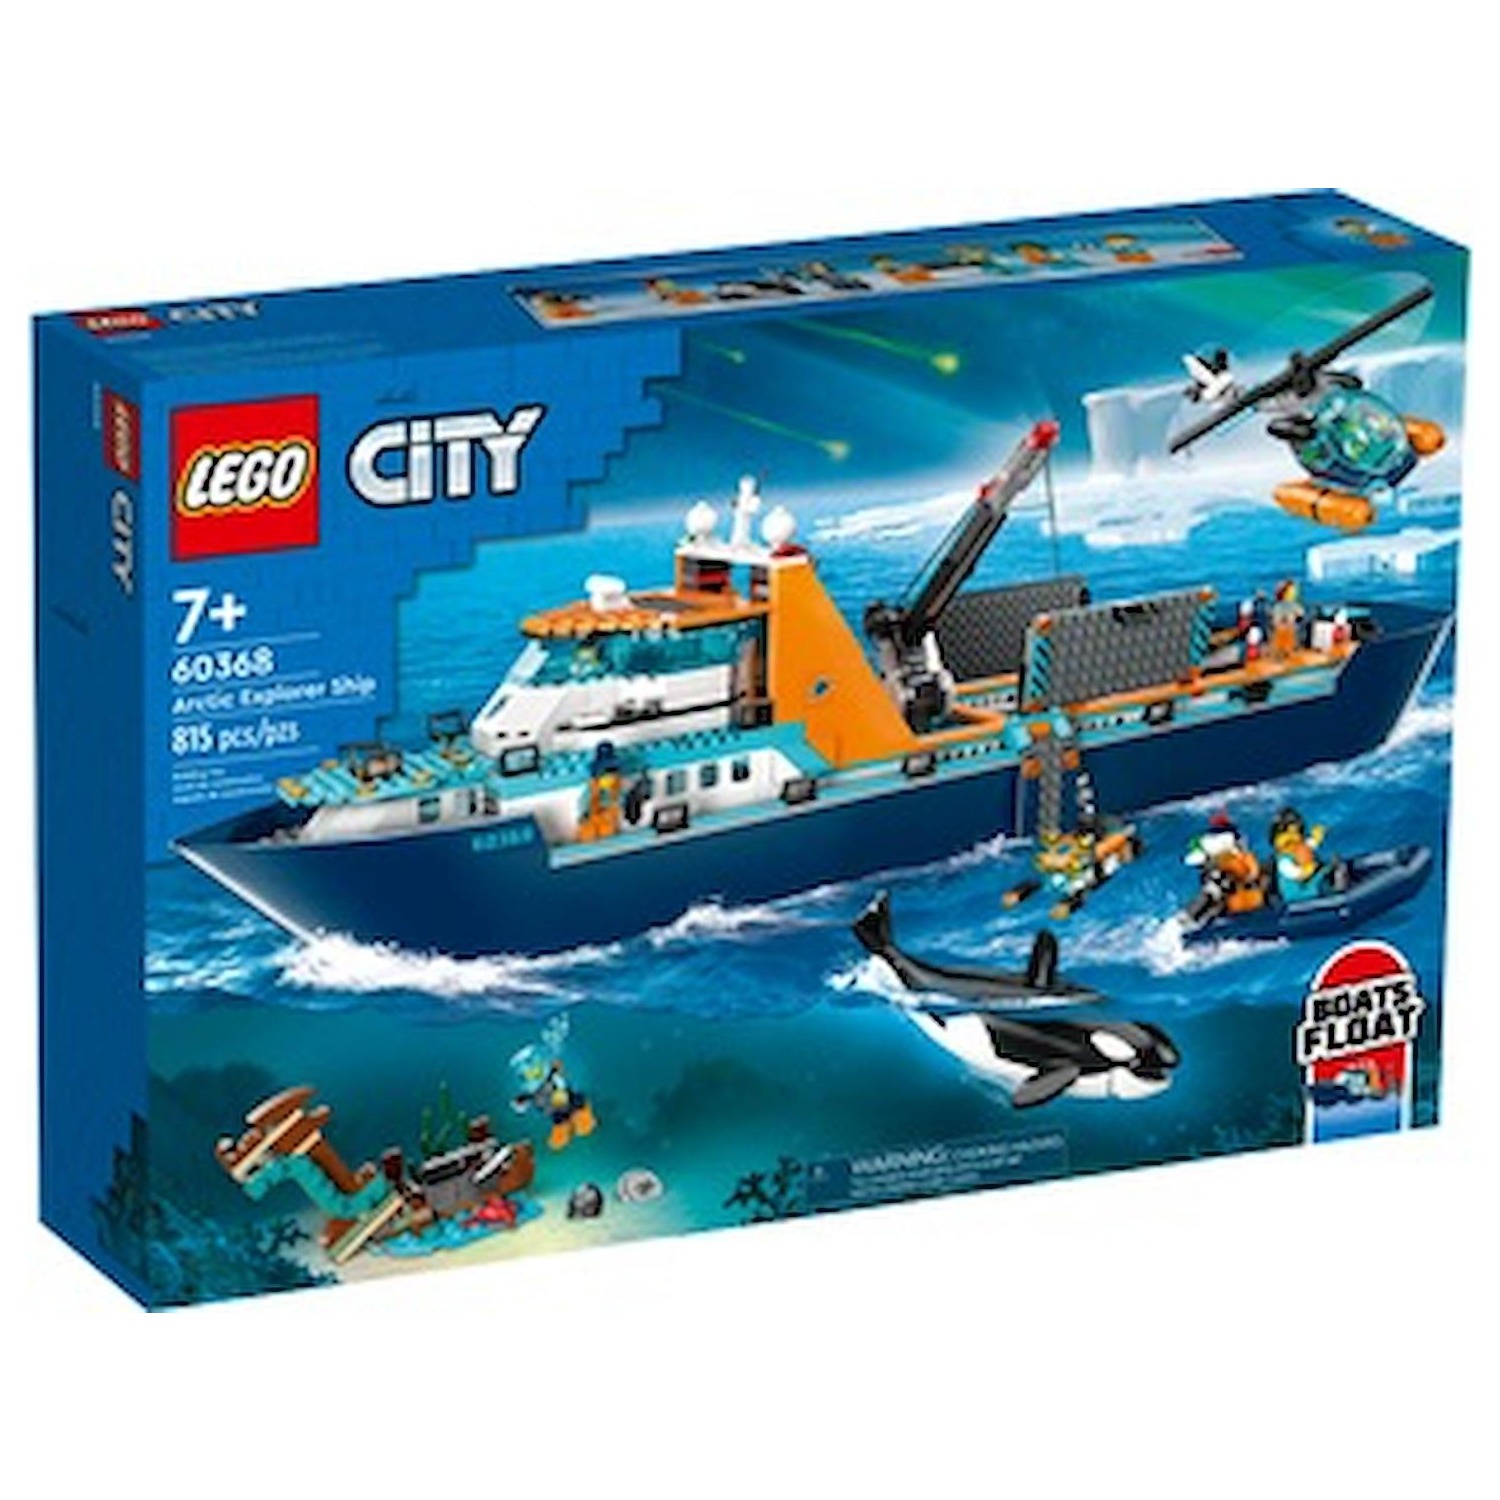 Immagine per Lego City Esploratore artico da DIMOStore